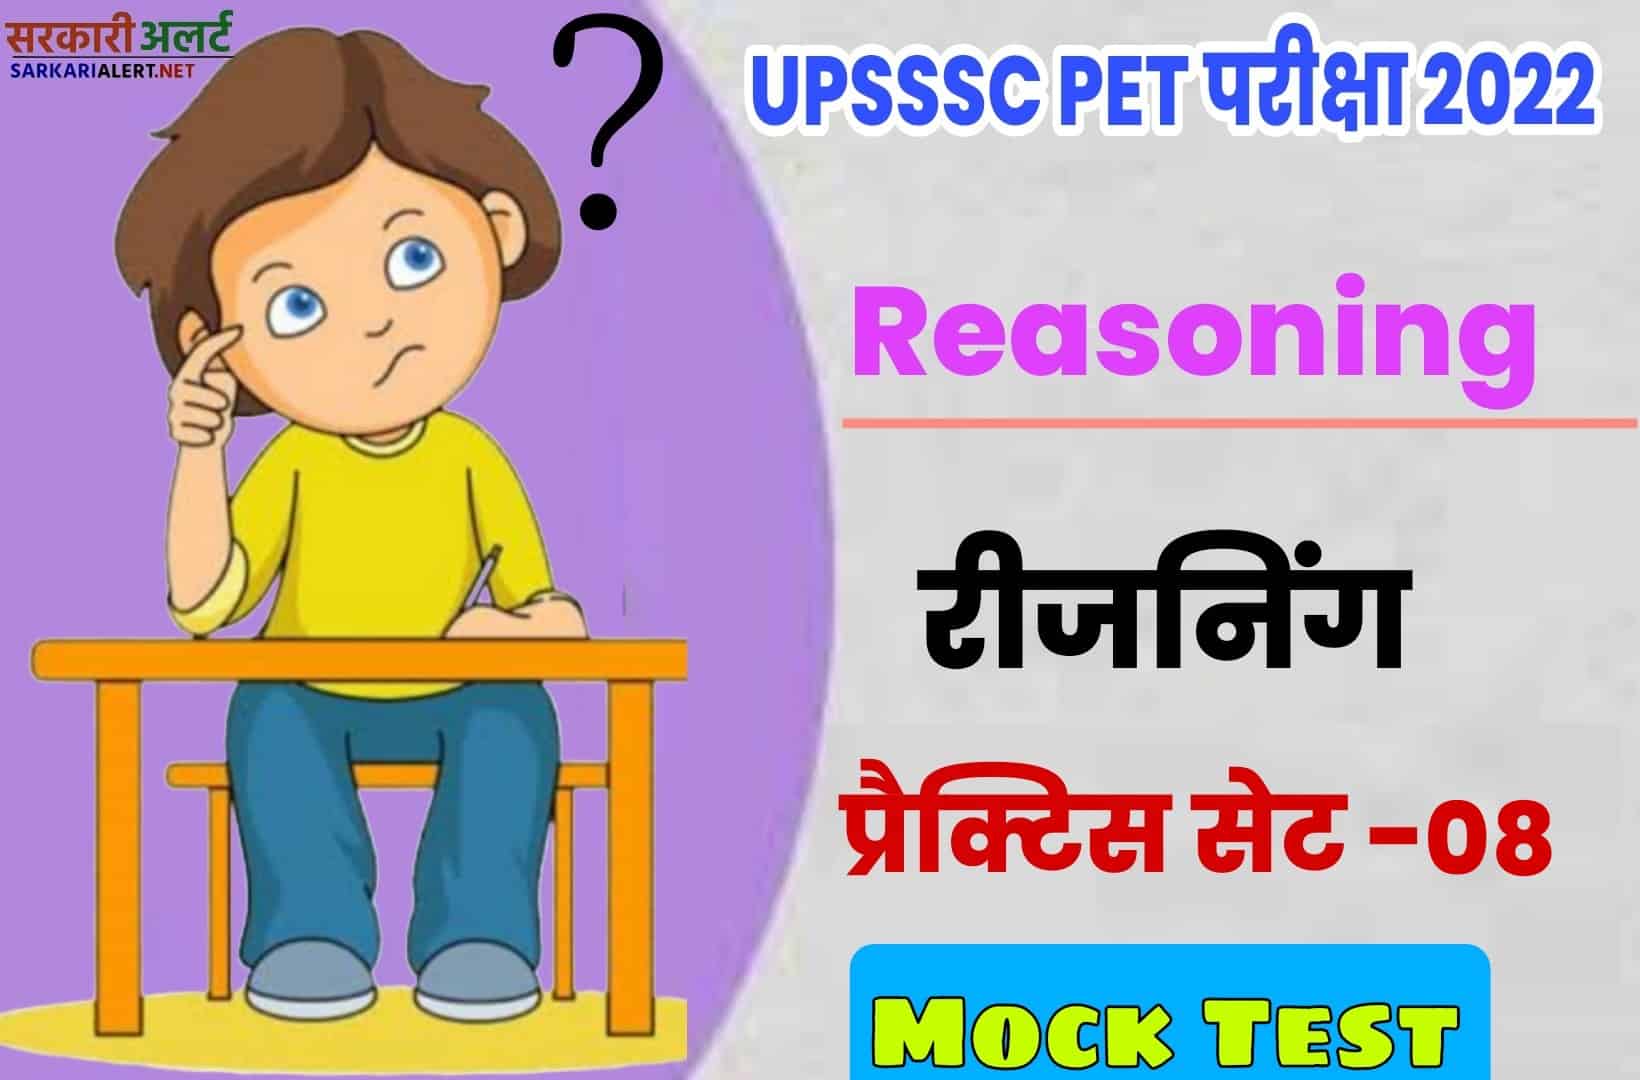 UPSSSC PET Reasoning Practice Set 08 | परीक्षा से पहले एक नजर जरूर पढ़ें मुख्य प्रश्नों संग्रह